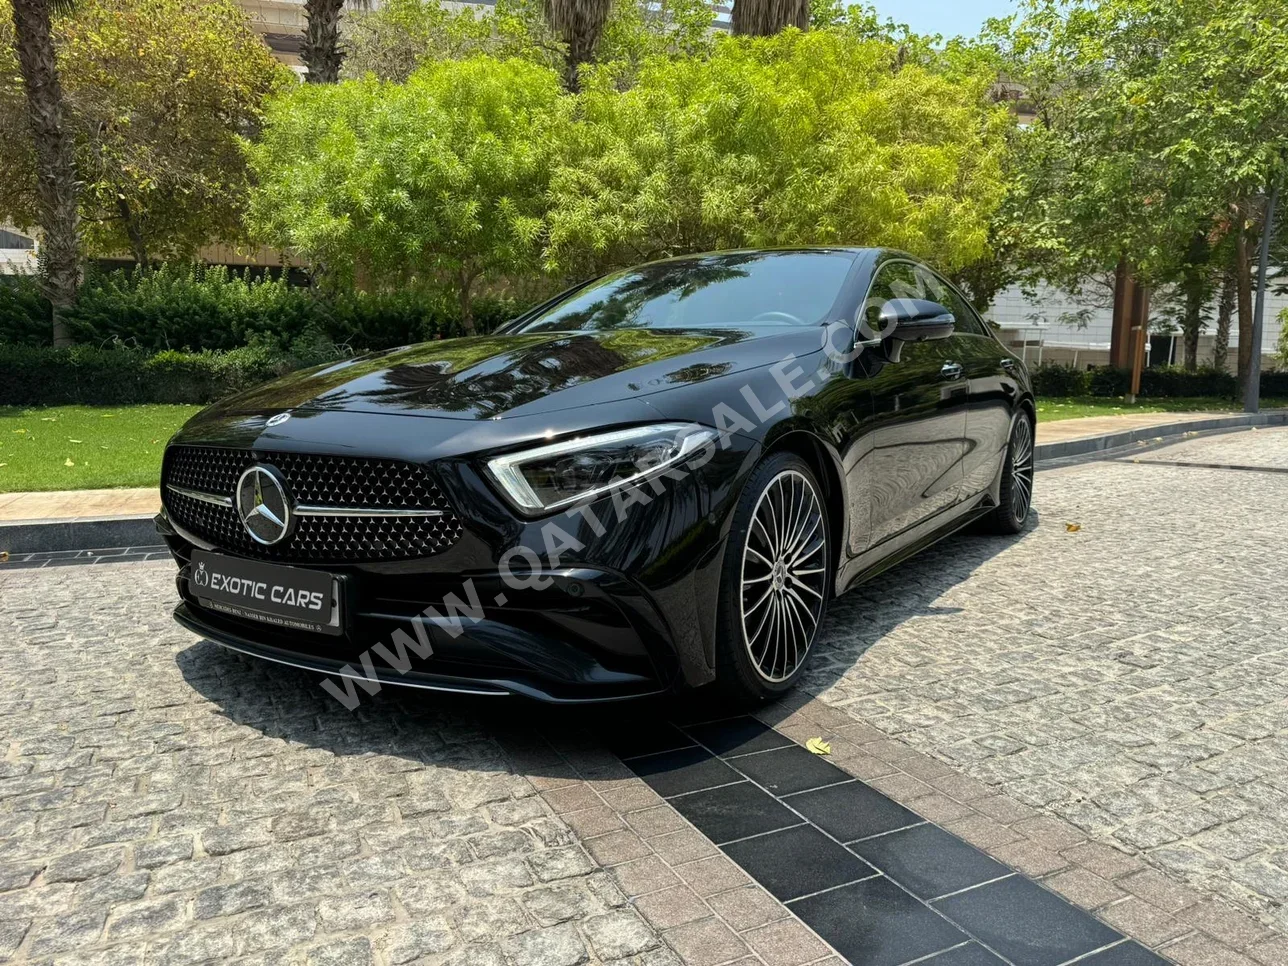 Mercedes-Benz  CLS  350 AMG  2023  Automatic  3,000 Km  6 Cylinder  Rear Wheel Drive (RWD)  Sedan  Black  With Warranty